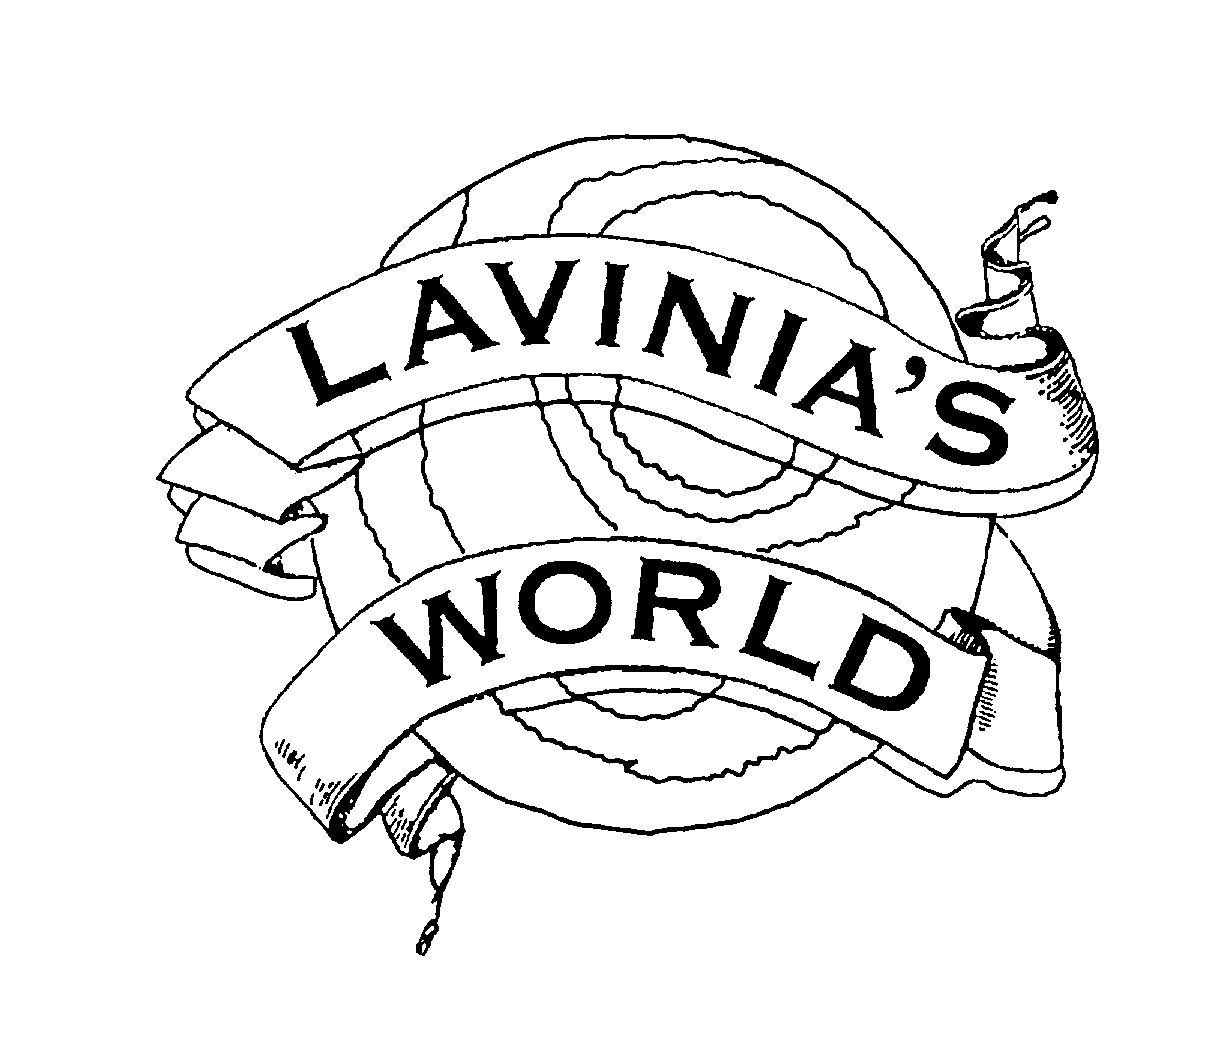 LAVINIA'S WORLD